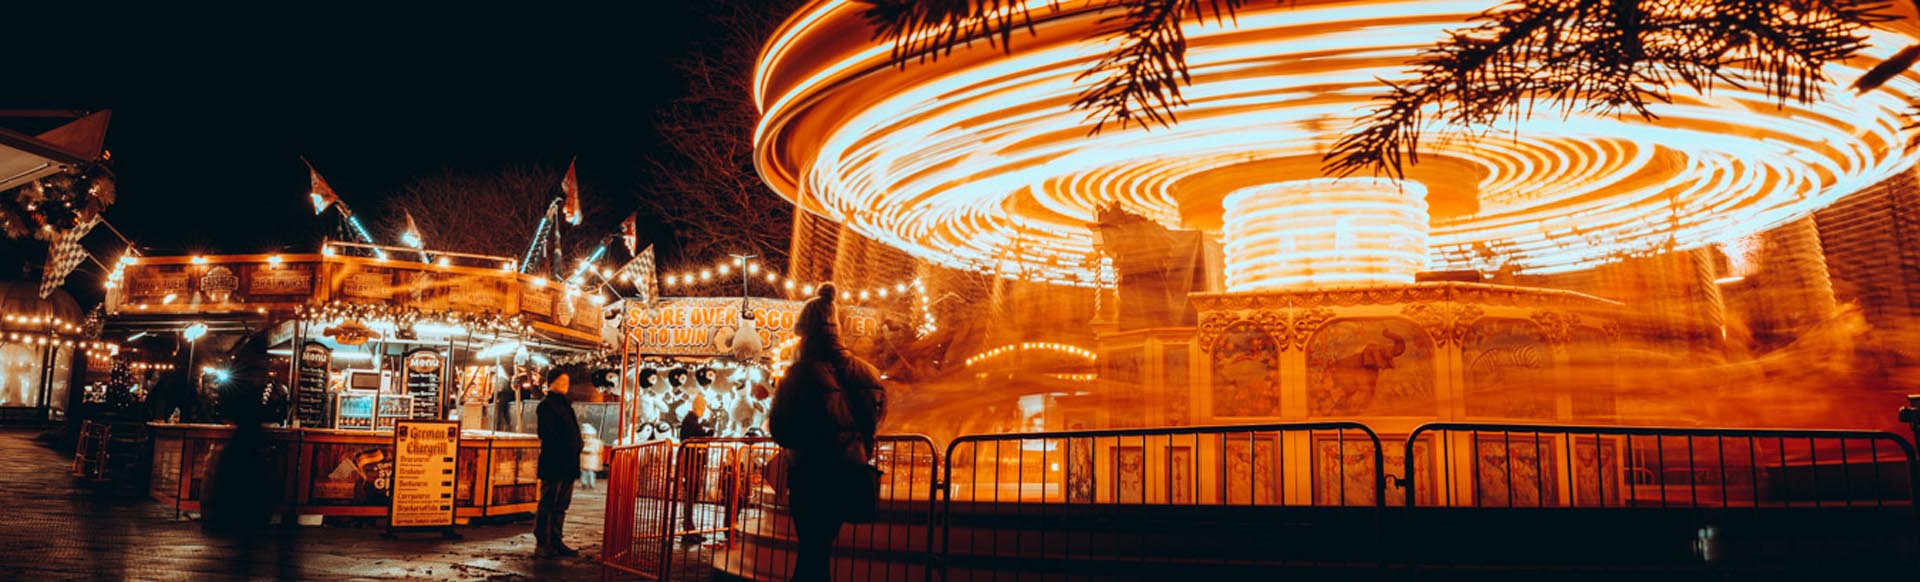 Christmas fairground rides in Harrogate